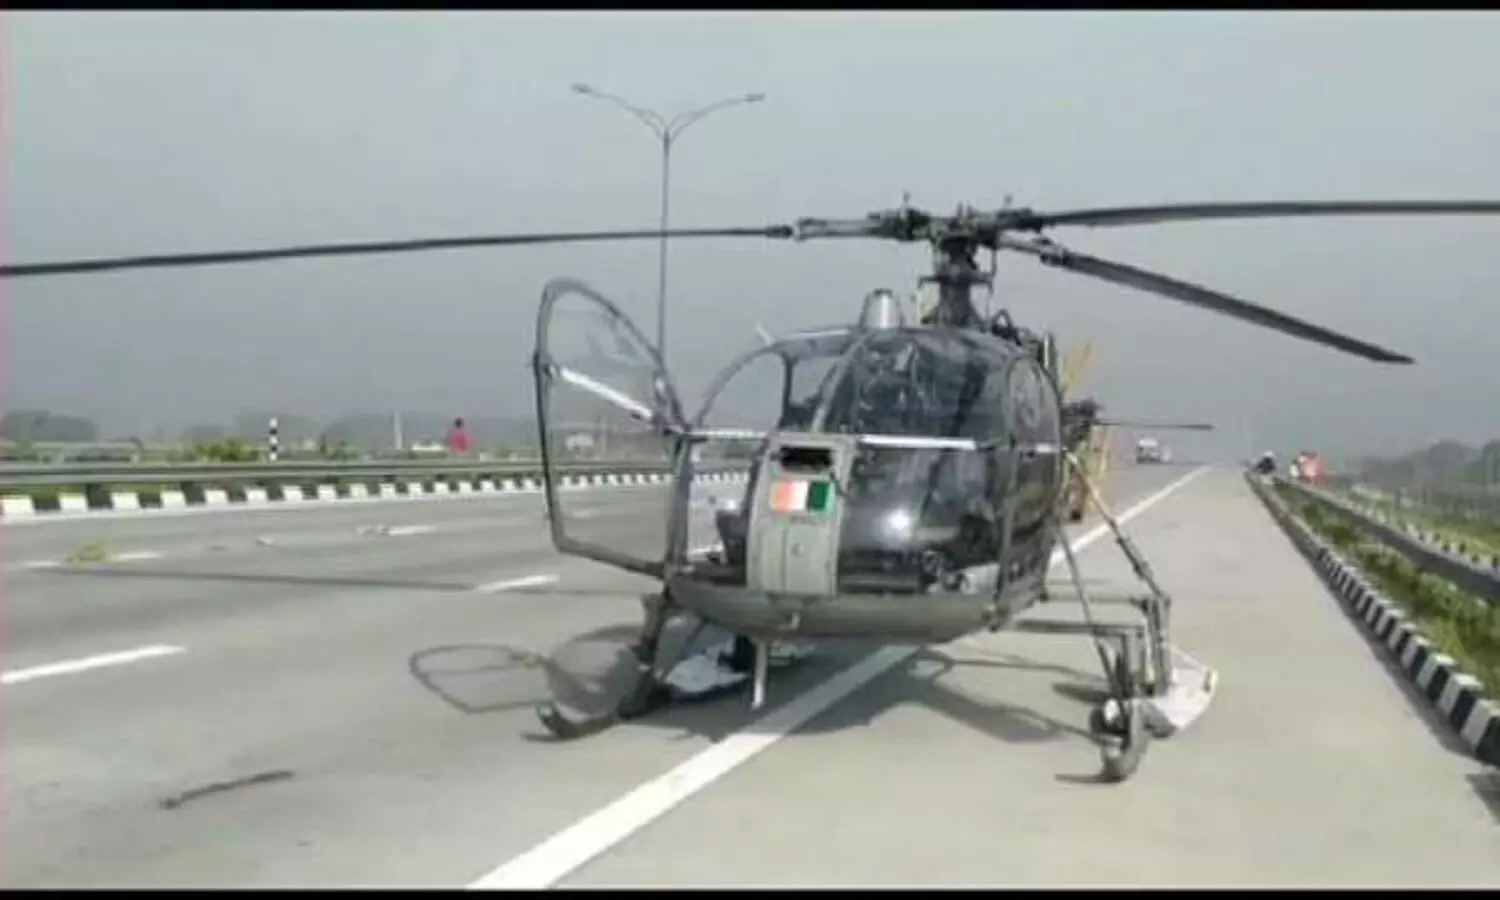 Sonbhadra news Today: ऊर्जांचल विस्तार के हवाई सर्वे में रुकावट, सुरक्षा कारणों से हेलीकॉप्टर लैंड करने की नहीं मिली अनुमति